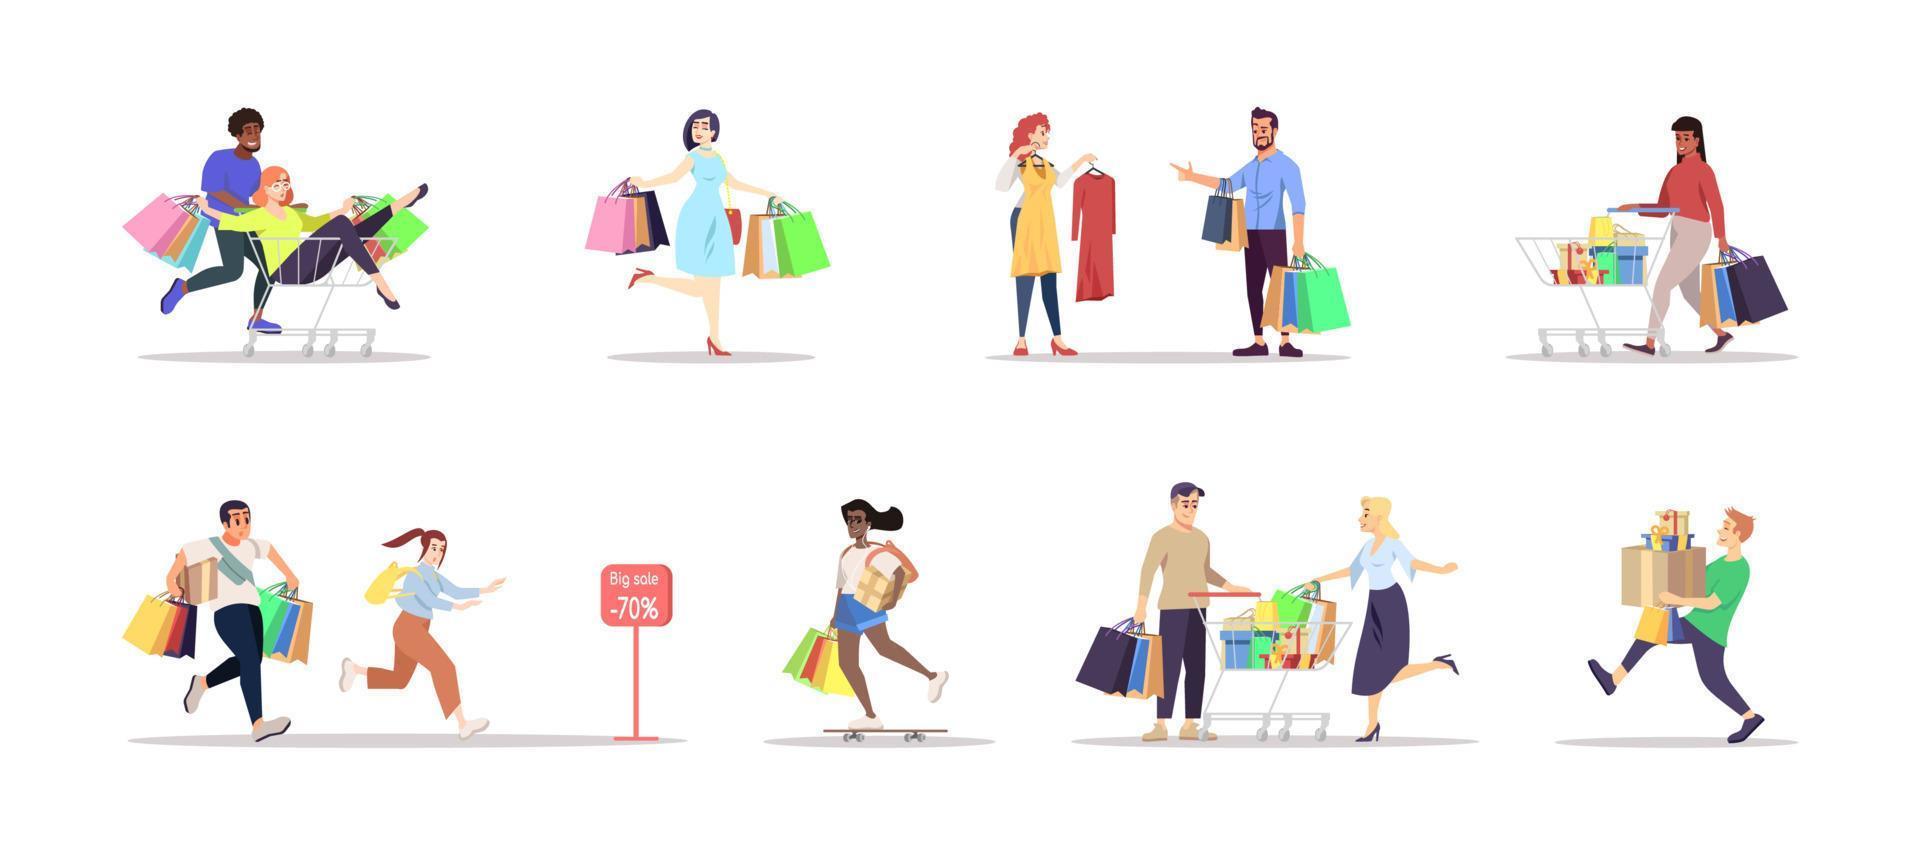 shopping platt vektor illustrationer set. människor med väskor, köper isolerade seriefigurer på vit bakgrund. specialerbjudande, säsongsbetonad finalrea, rabatt. livsmedelsbutiker, mode, semesterpresenter